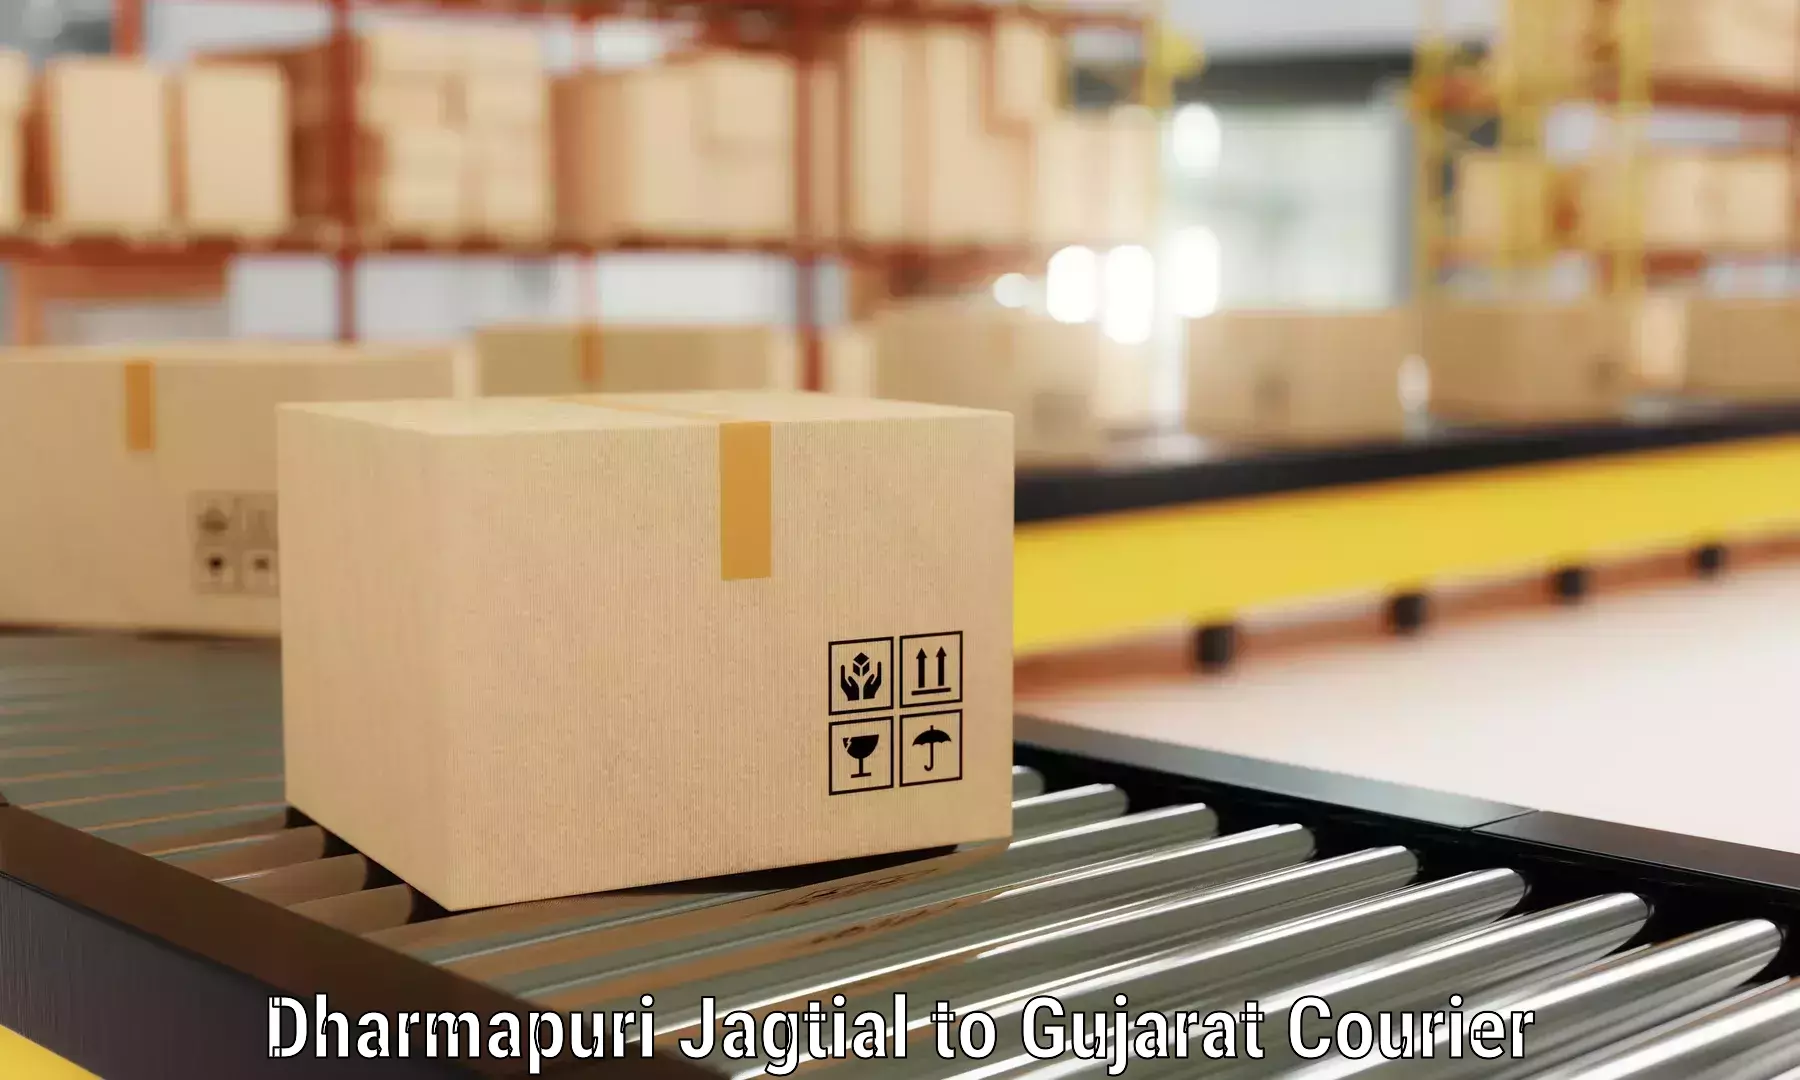 Budget-friendly movers Dharmapuri Jagtial to Udhana